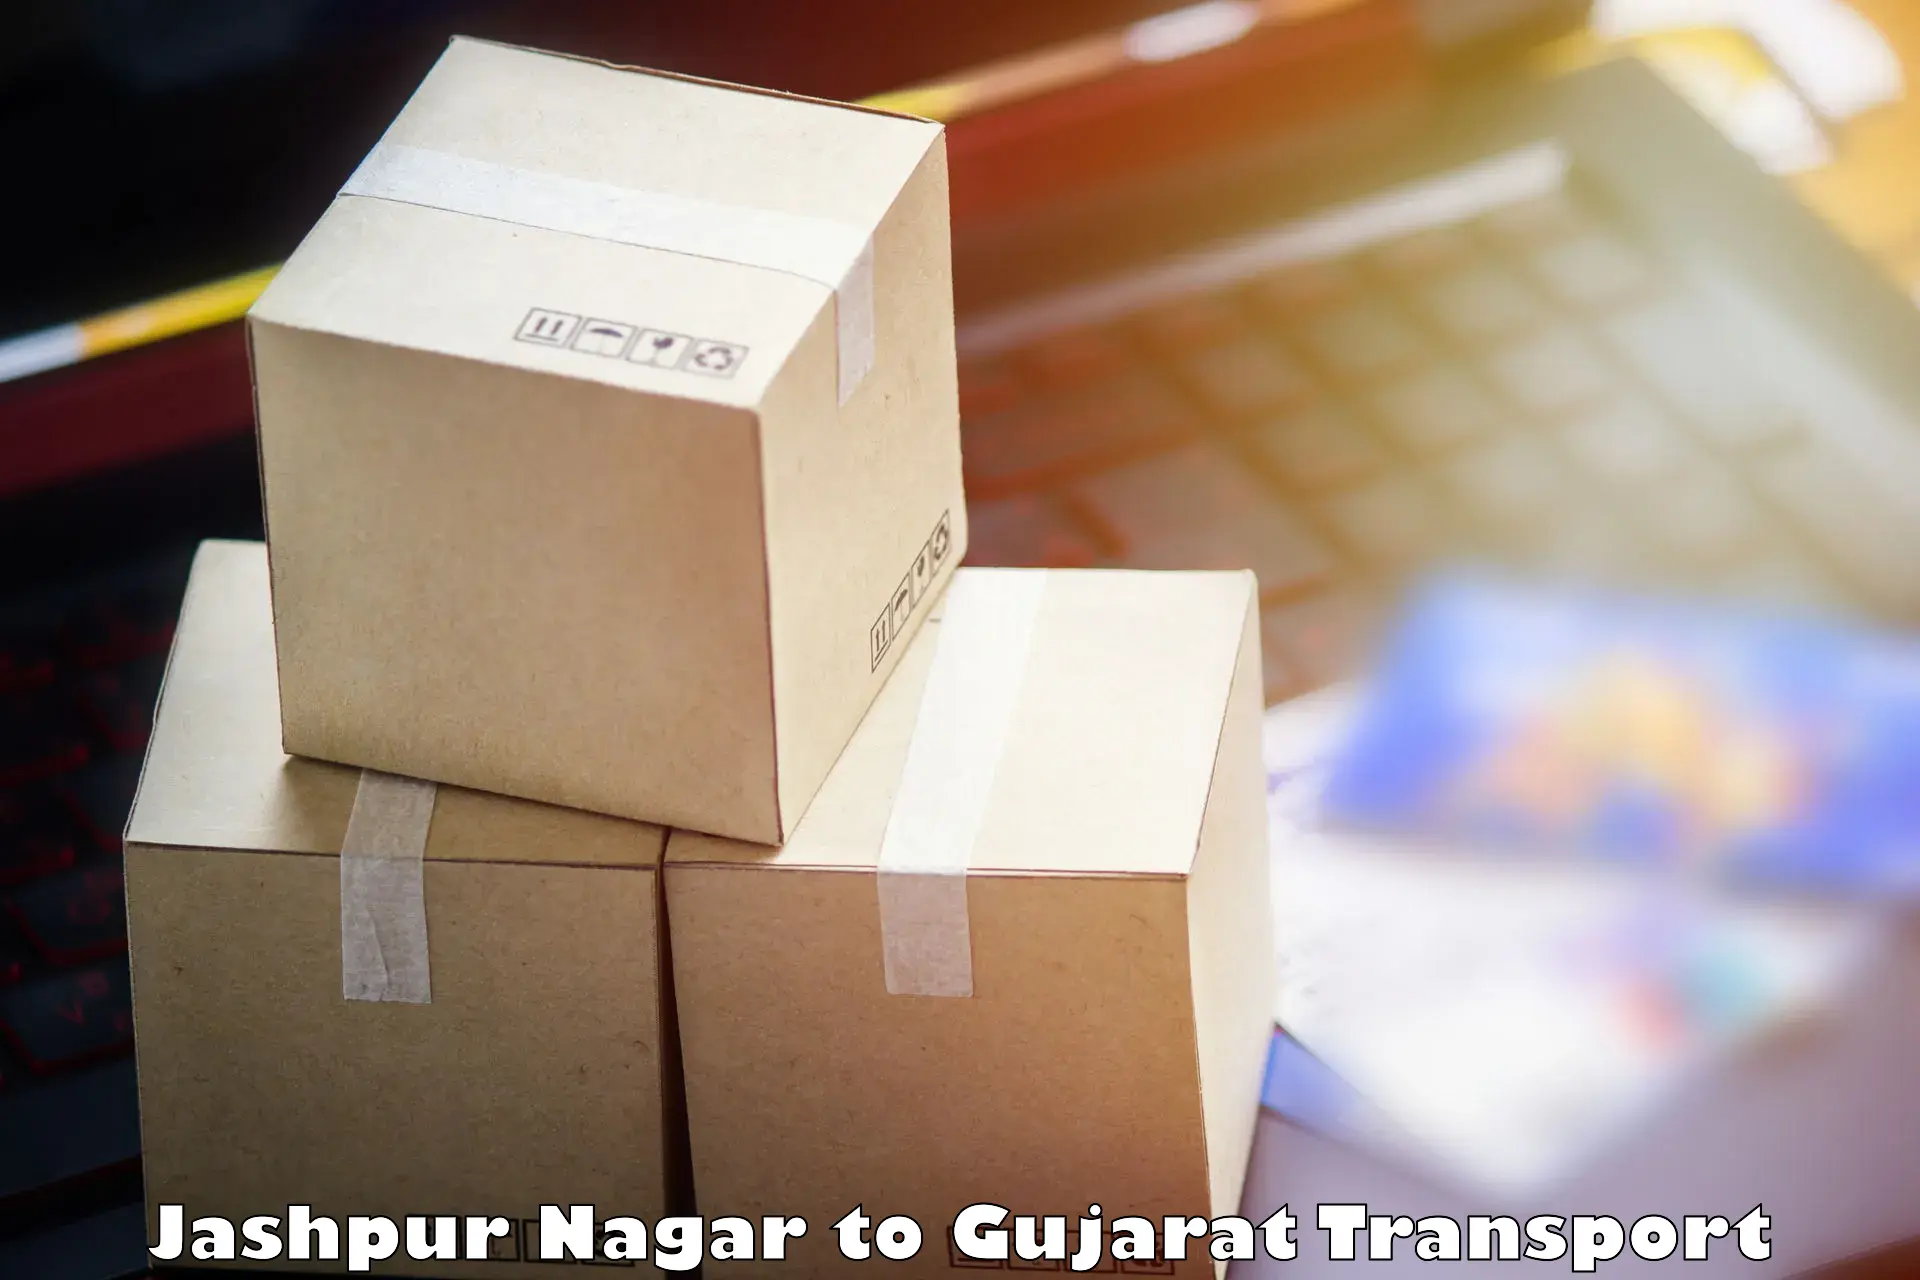 Cargo transport services Jashpur Nagar to Palanpur